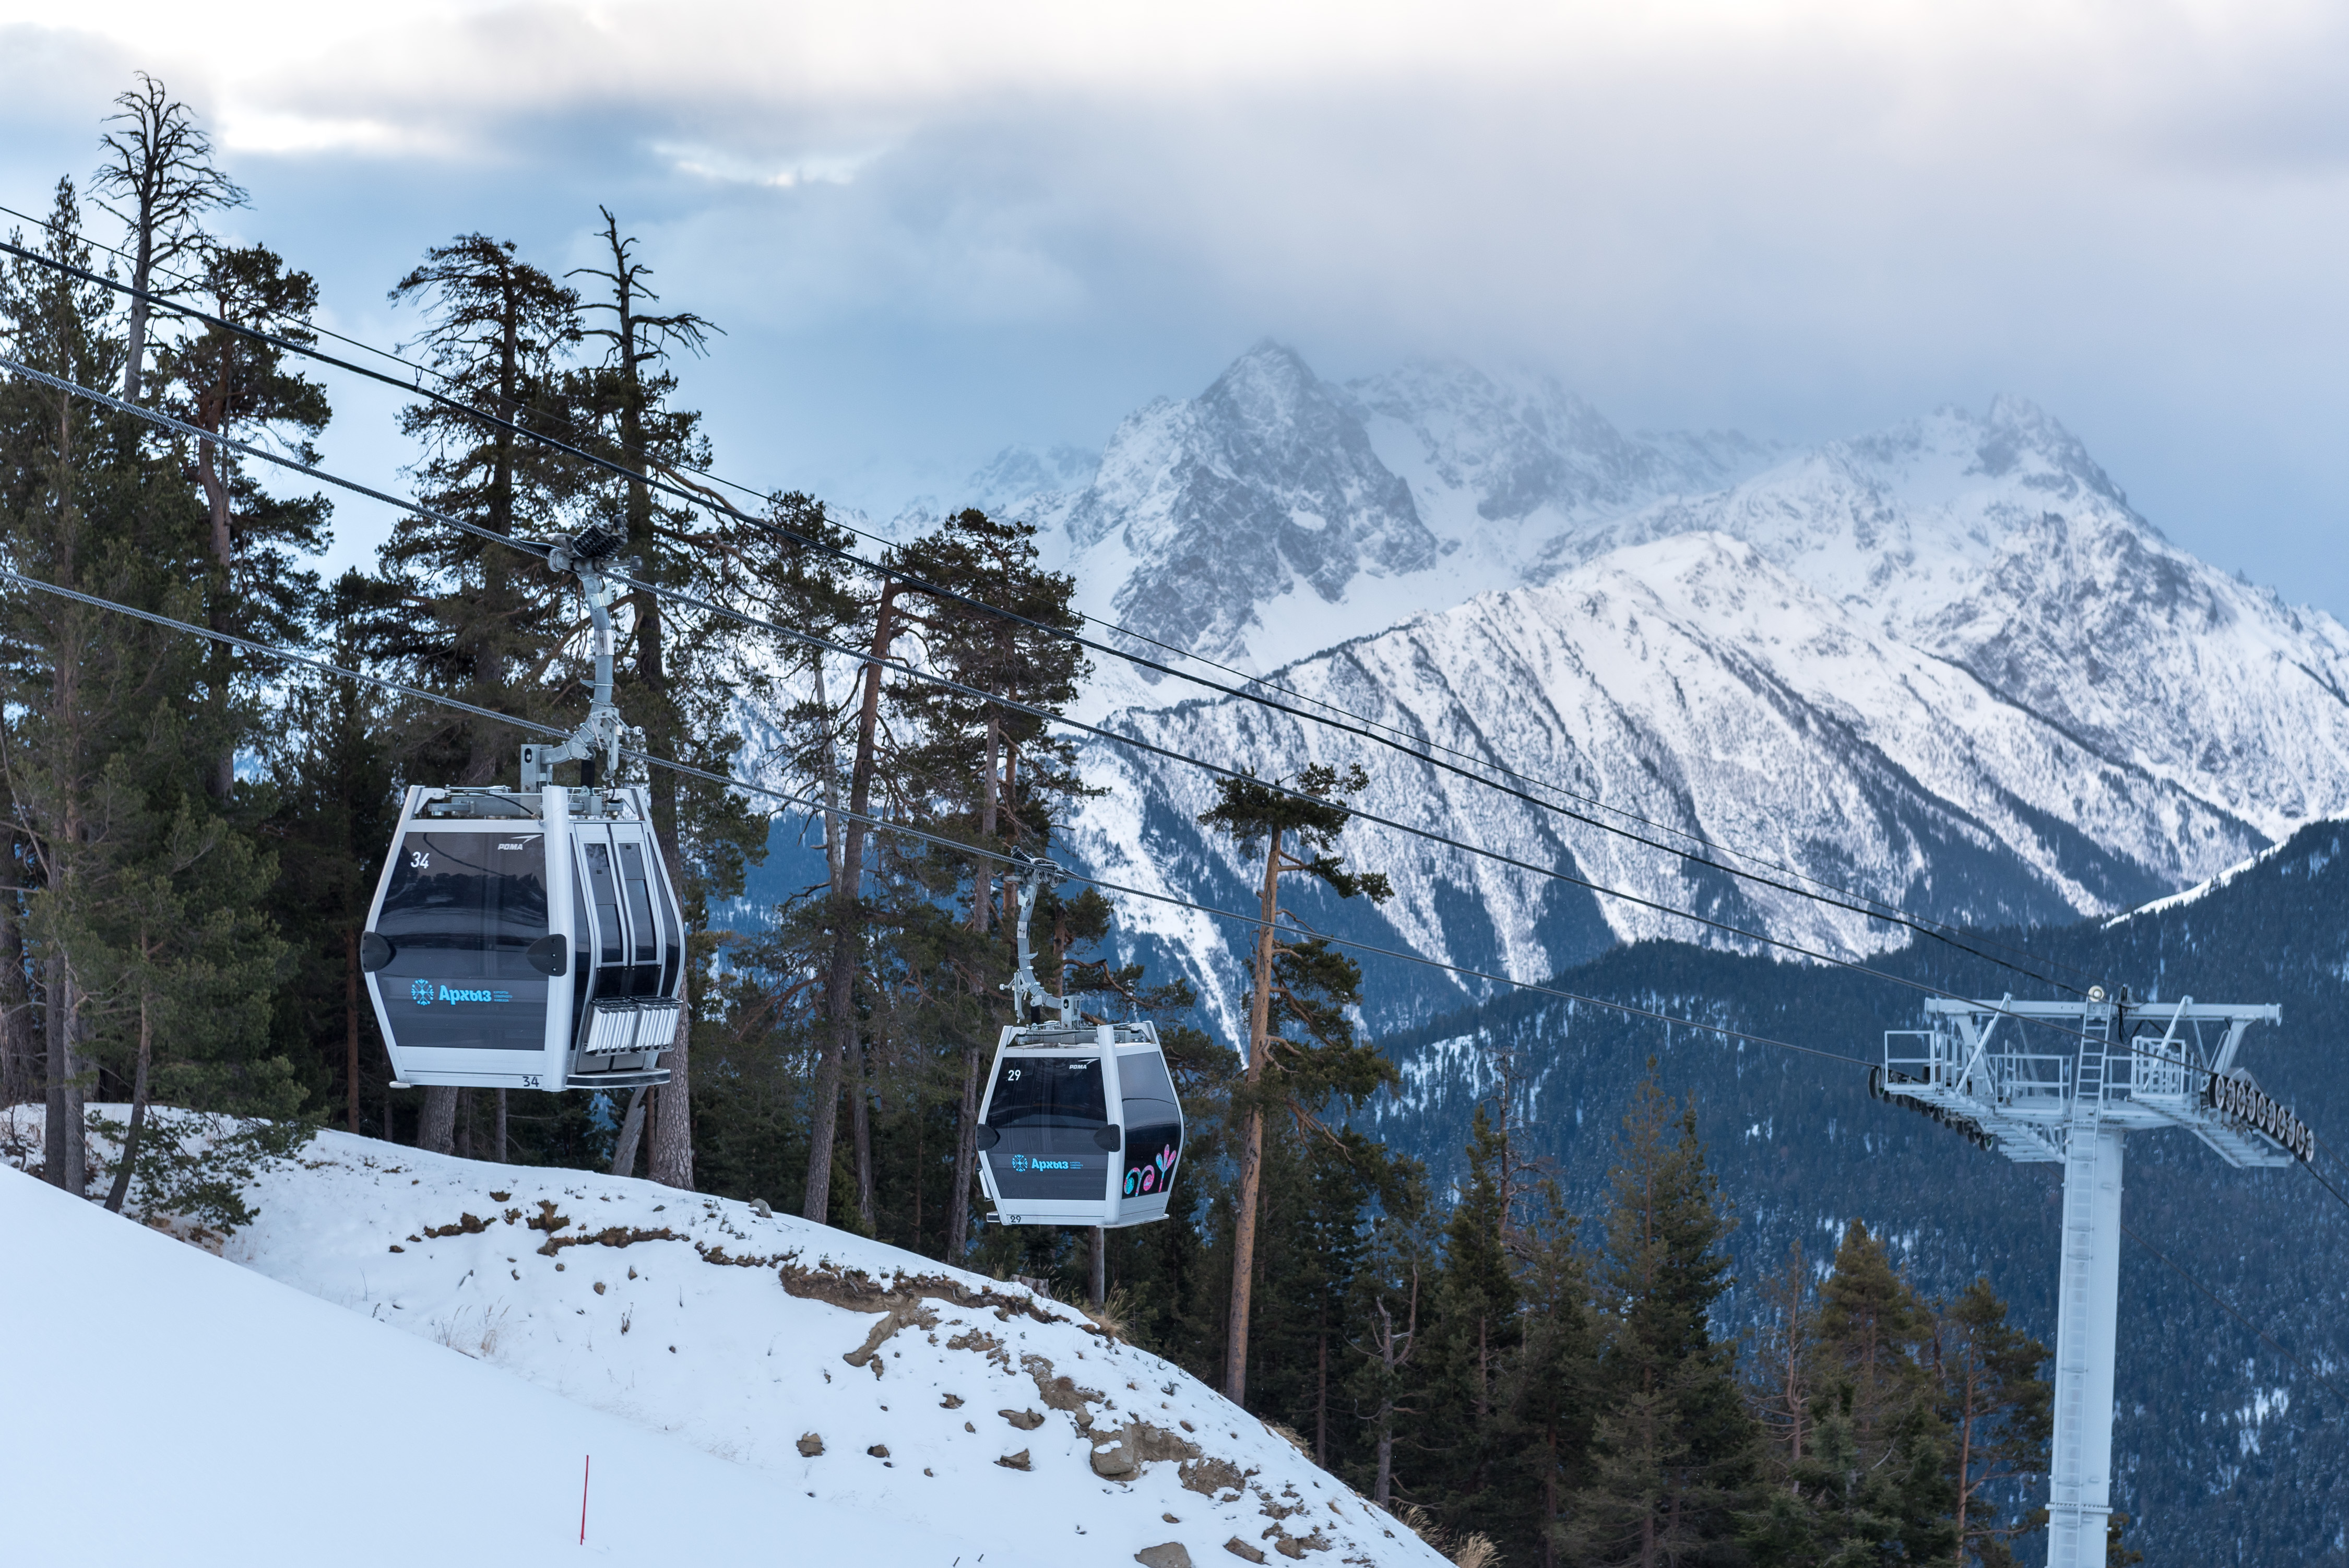 ТАСС: На горнолыжном курорте «Архыз» построят две новые канатные дороги